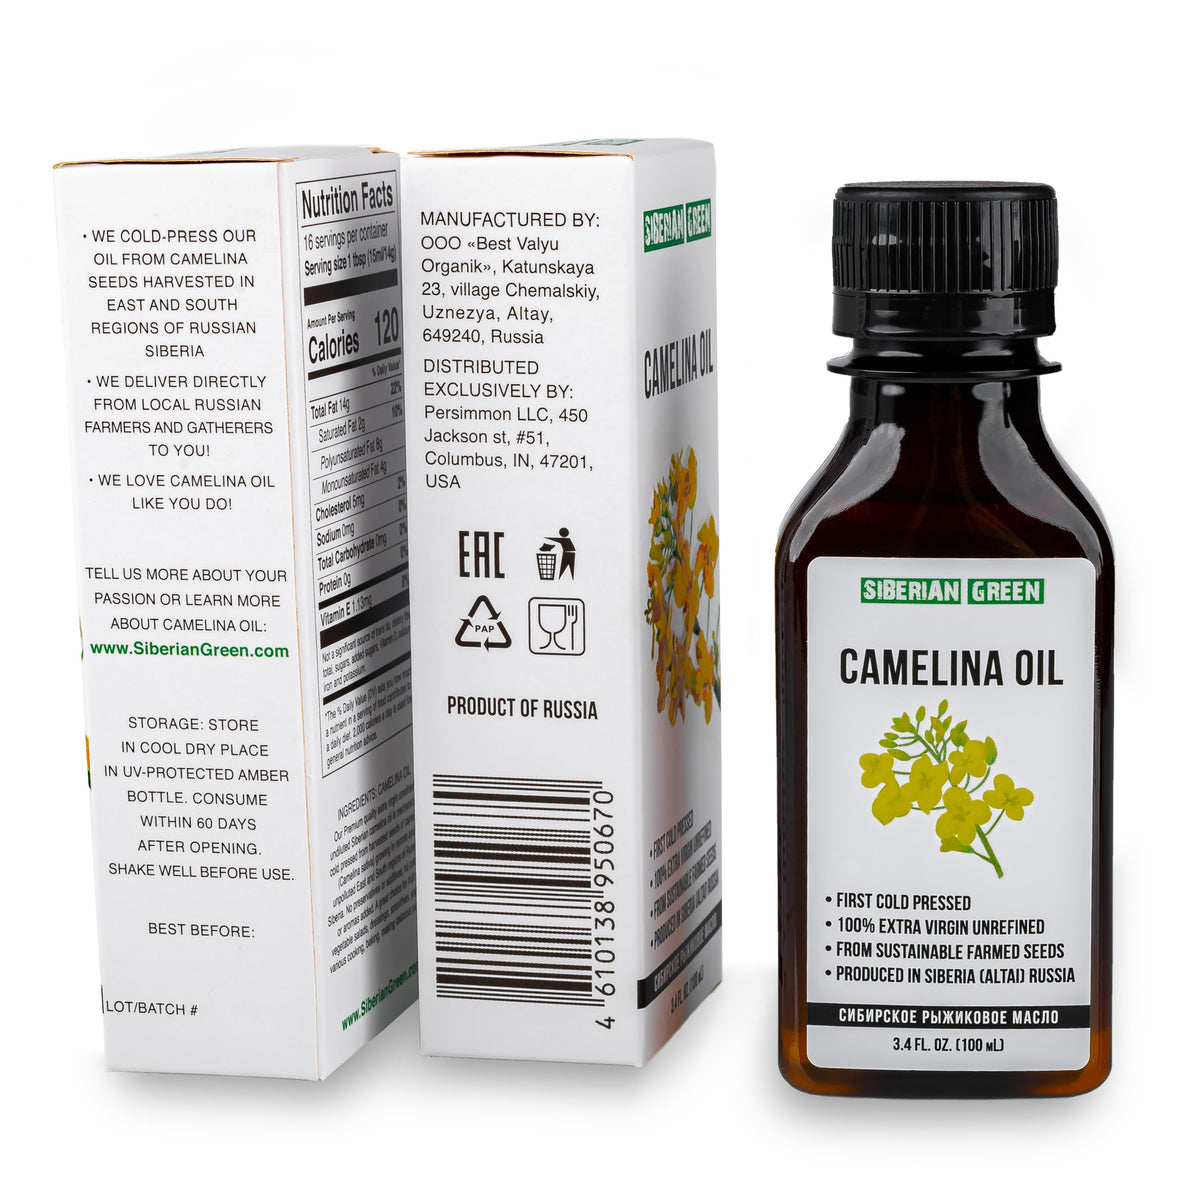 Siberian Camelina Oil | Extra Virgin Cold Pressed 100 ml / 3.4 fl oz |Premium Omega-3